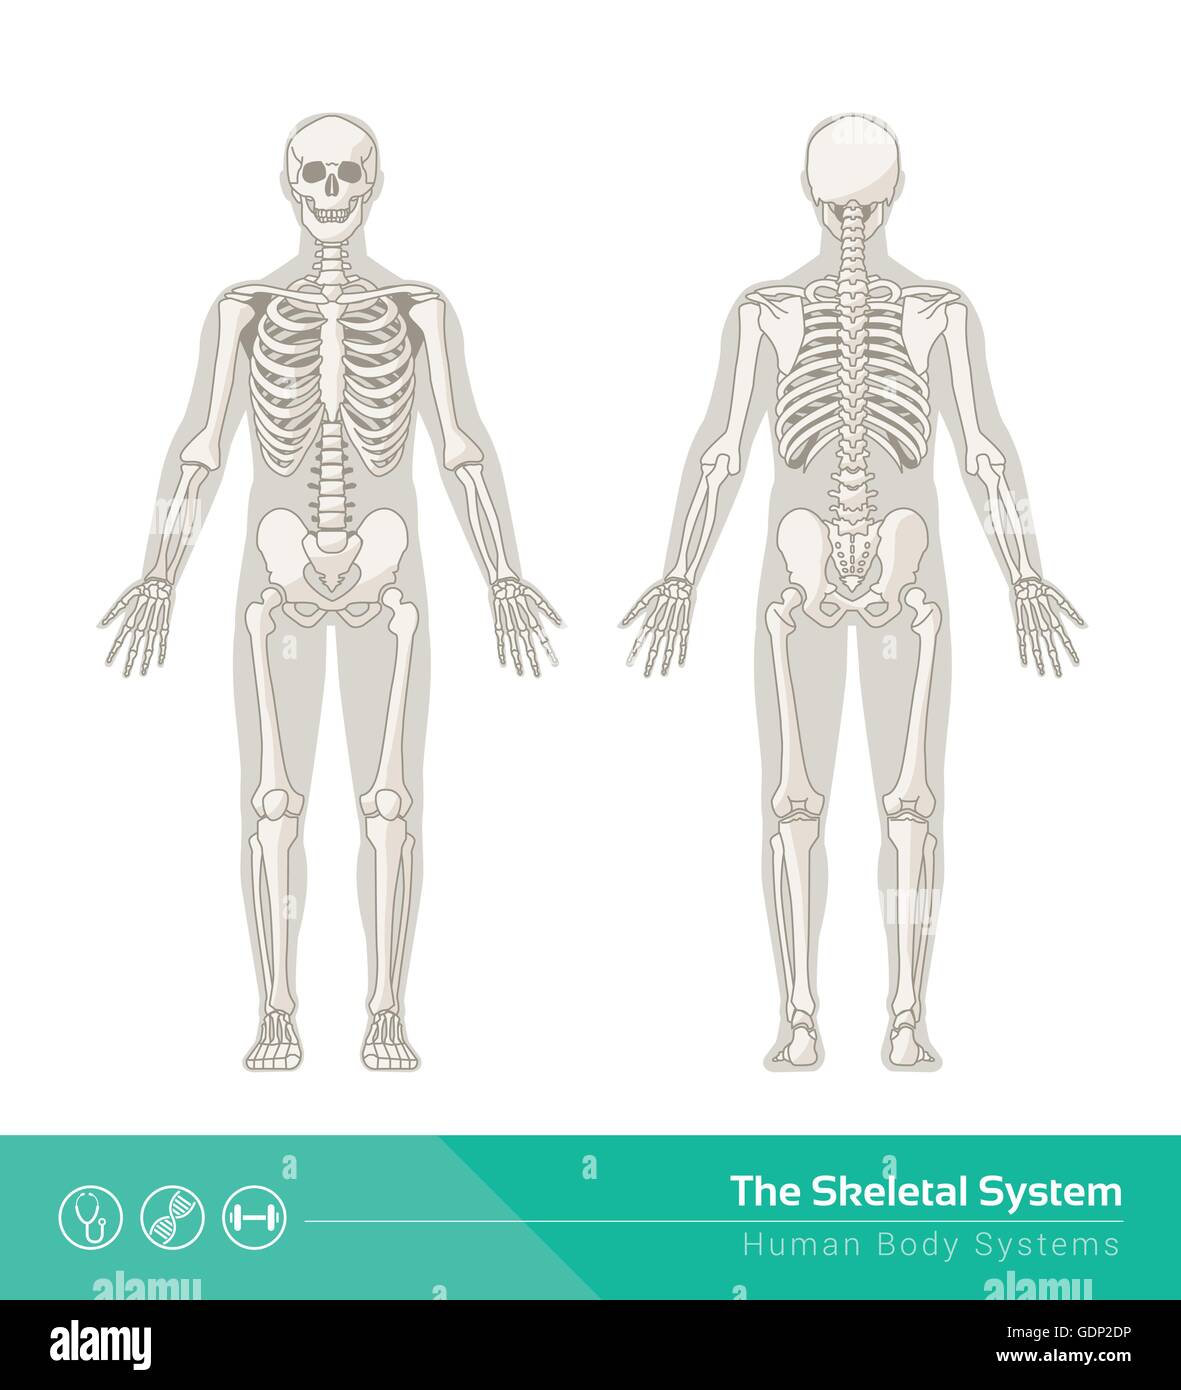 Das menschliche Skelett-System, Vektor-Illustrationen von menschlichen Skelett Front- und Rückansicht Stock Vektor